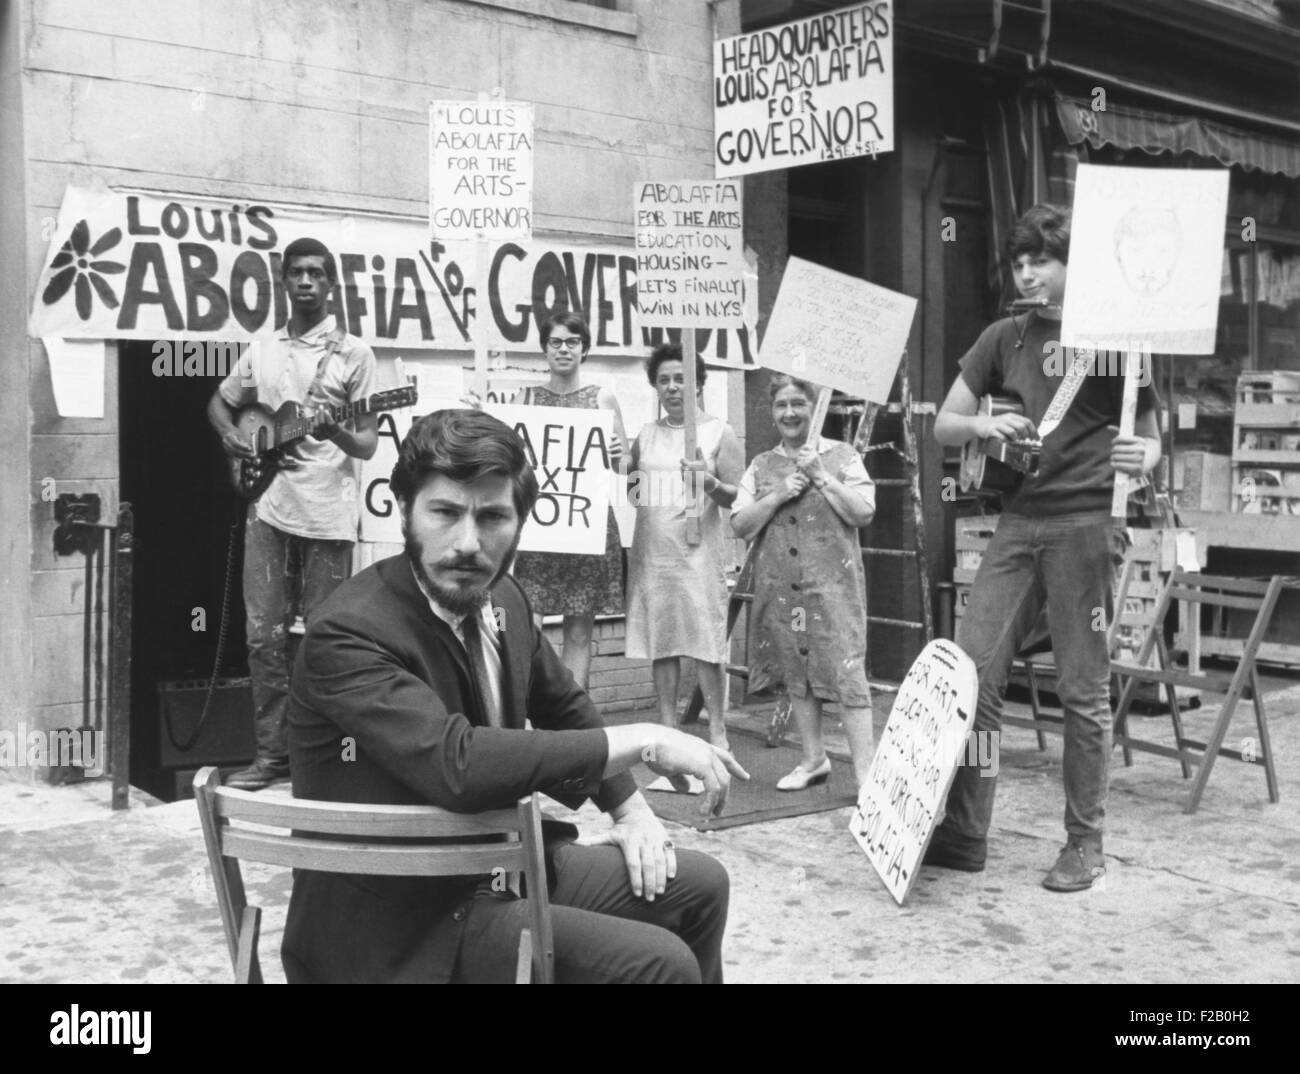 Louis Abolafia, un artiste a cherché une renaissance des arts par l'exécution pour le gouverneur de New York. 16 août, 1966. Derrière lui sont ses partisans et leurs affiches électorales. CSU (2015  9 1118) Banque D'Images